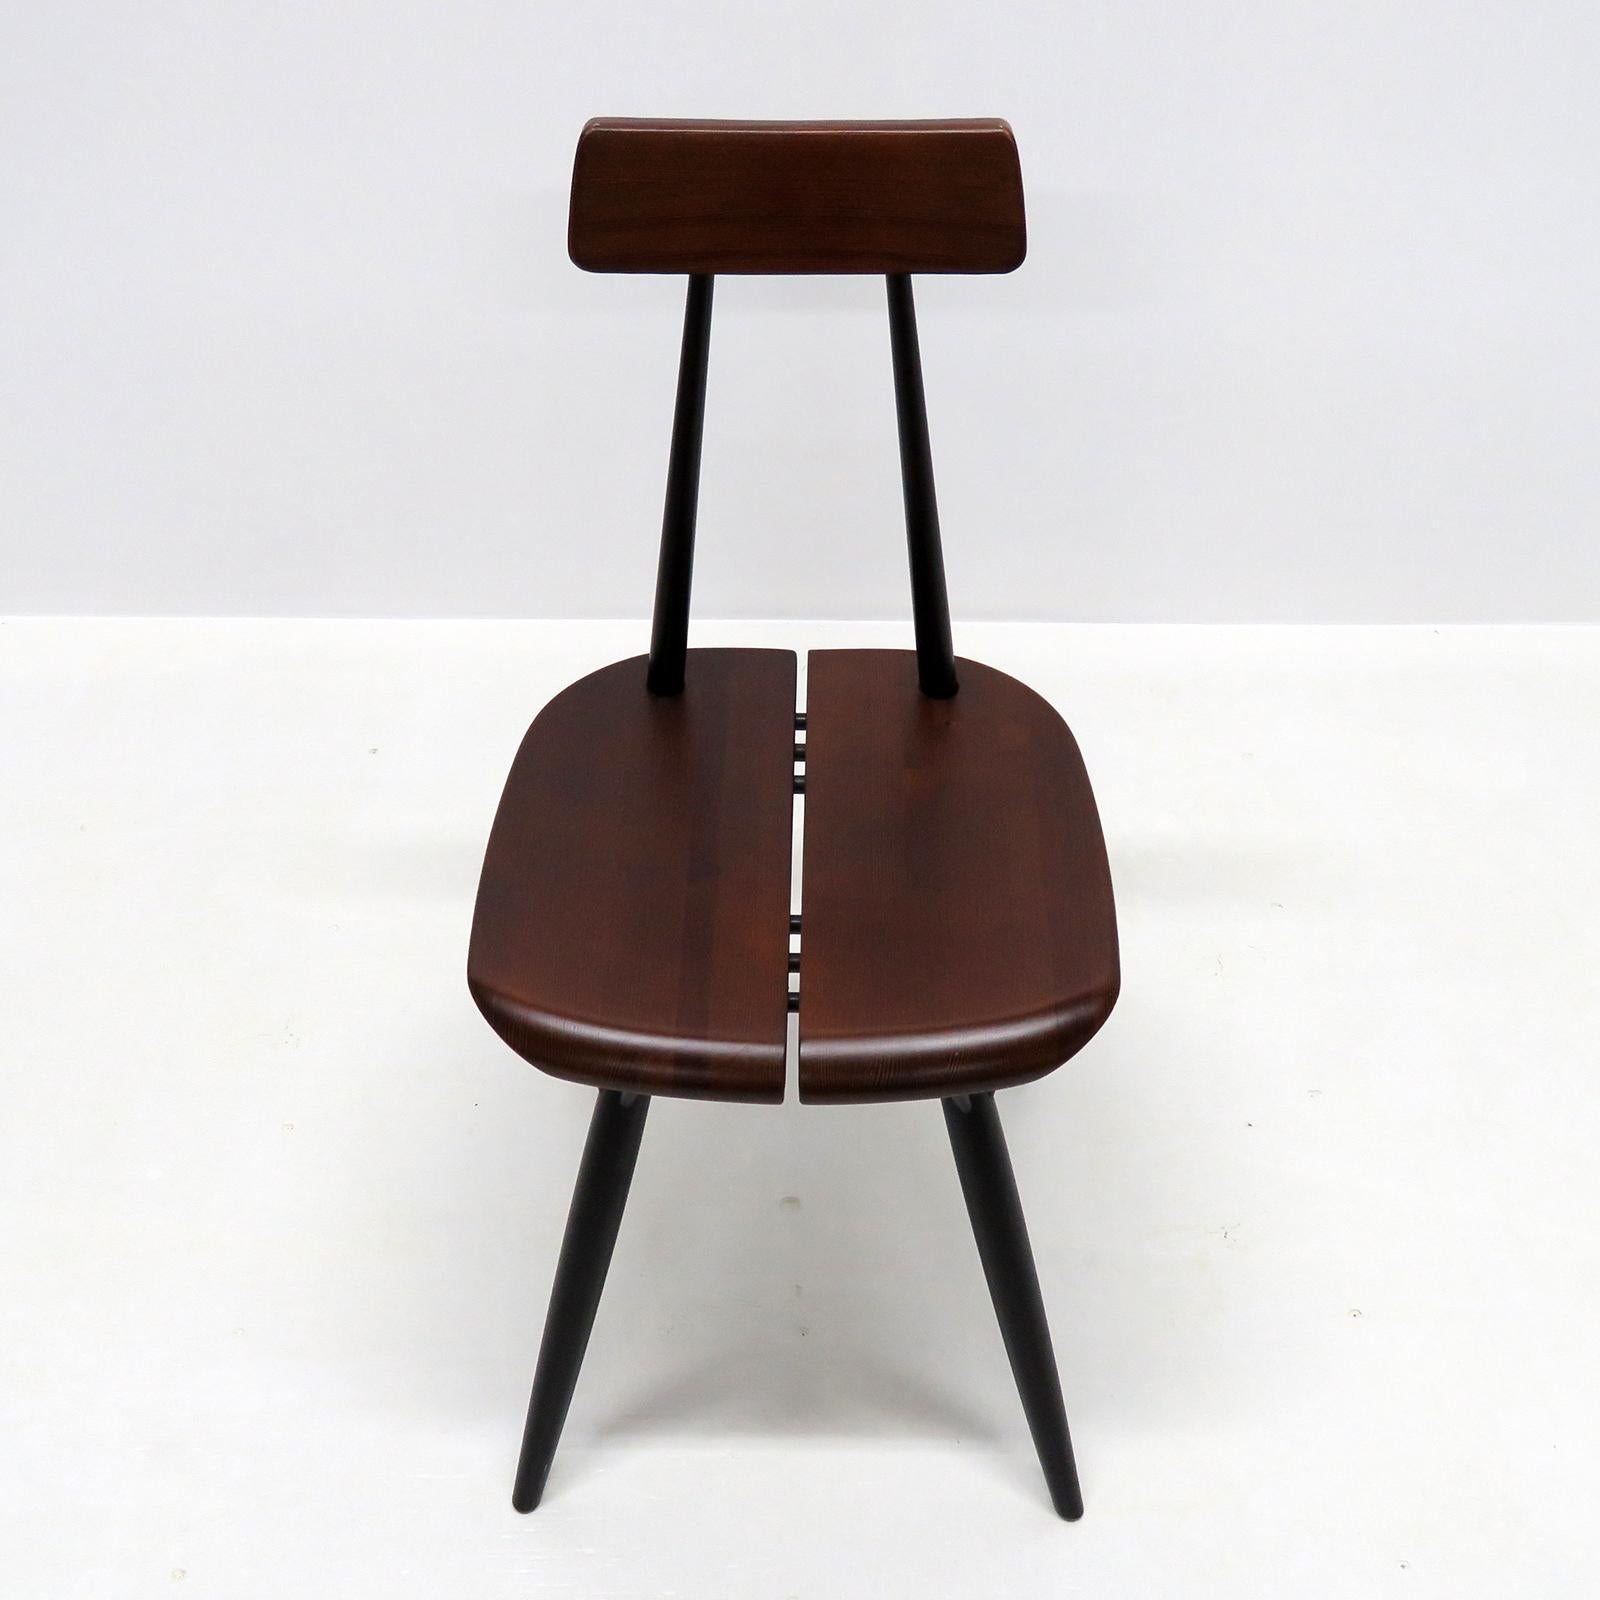 Scandinavian Modern Ilmari Tapiovaara, ‘Pirkka’ Chairs, 1955 For Sale